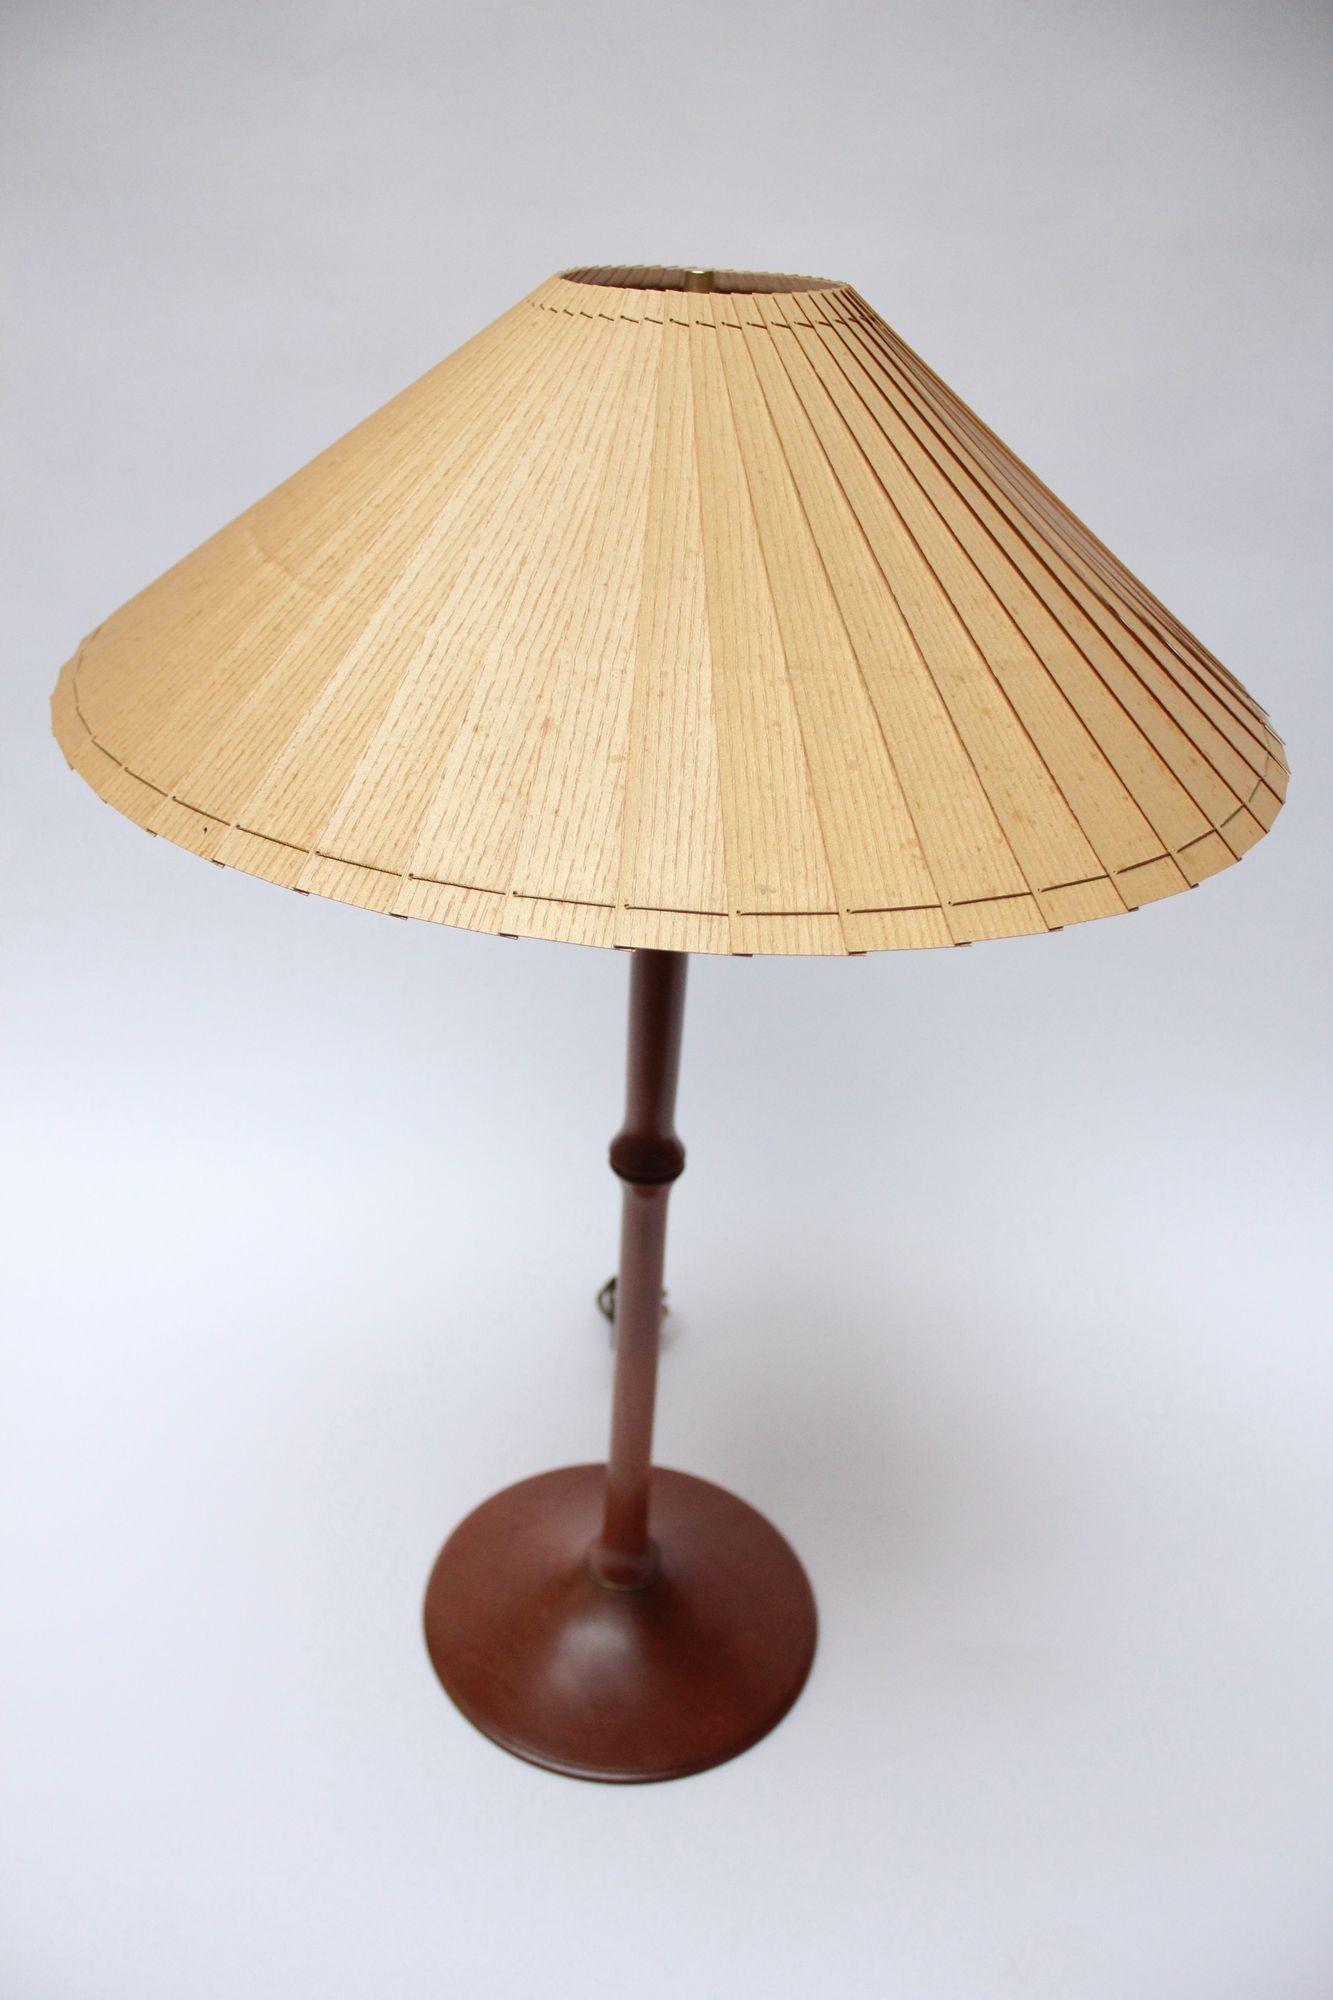 Lampe de table sculpturale en bois de cerisier avec accents en laiton et abat-jour original en papier (Vermont, USA, 1995).
Equipé d'une douille double pouvant accueillir deux ampoules avec un interrupteur à tirette marche/arrêt.
Nouvellement